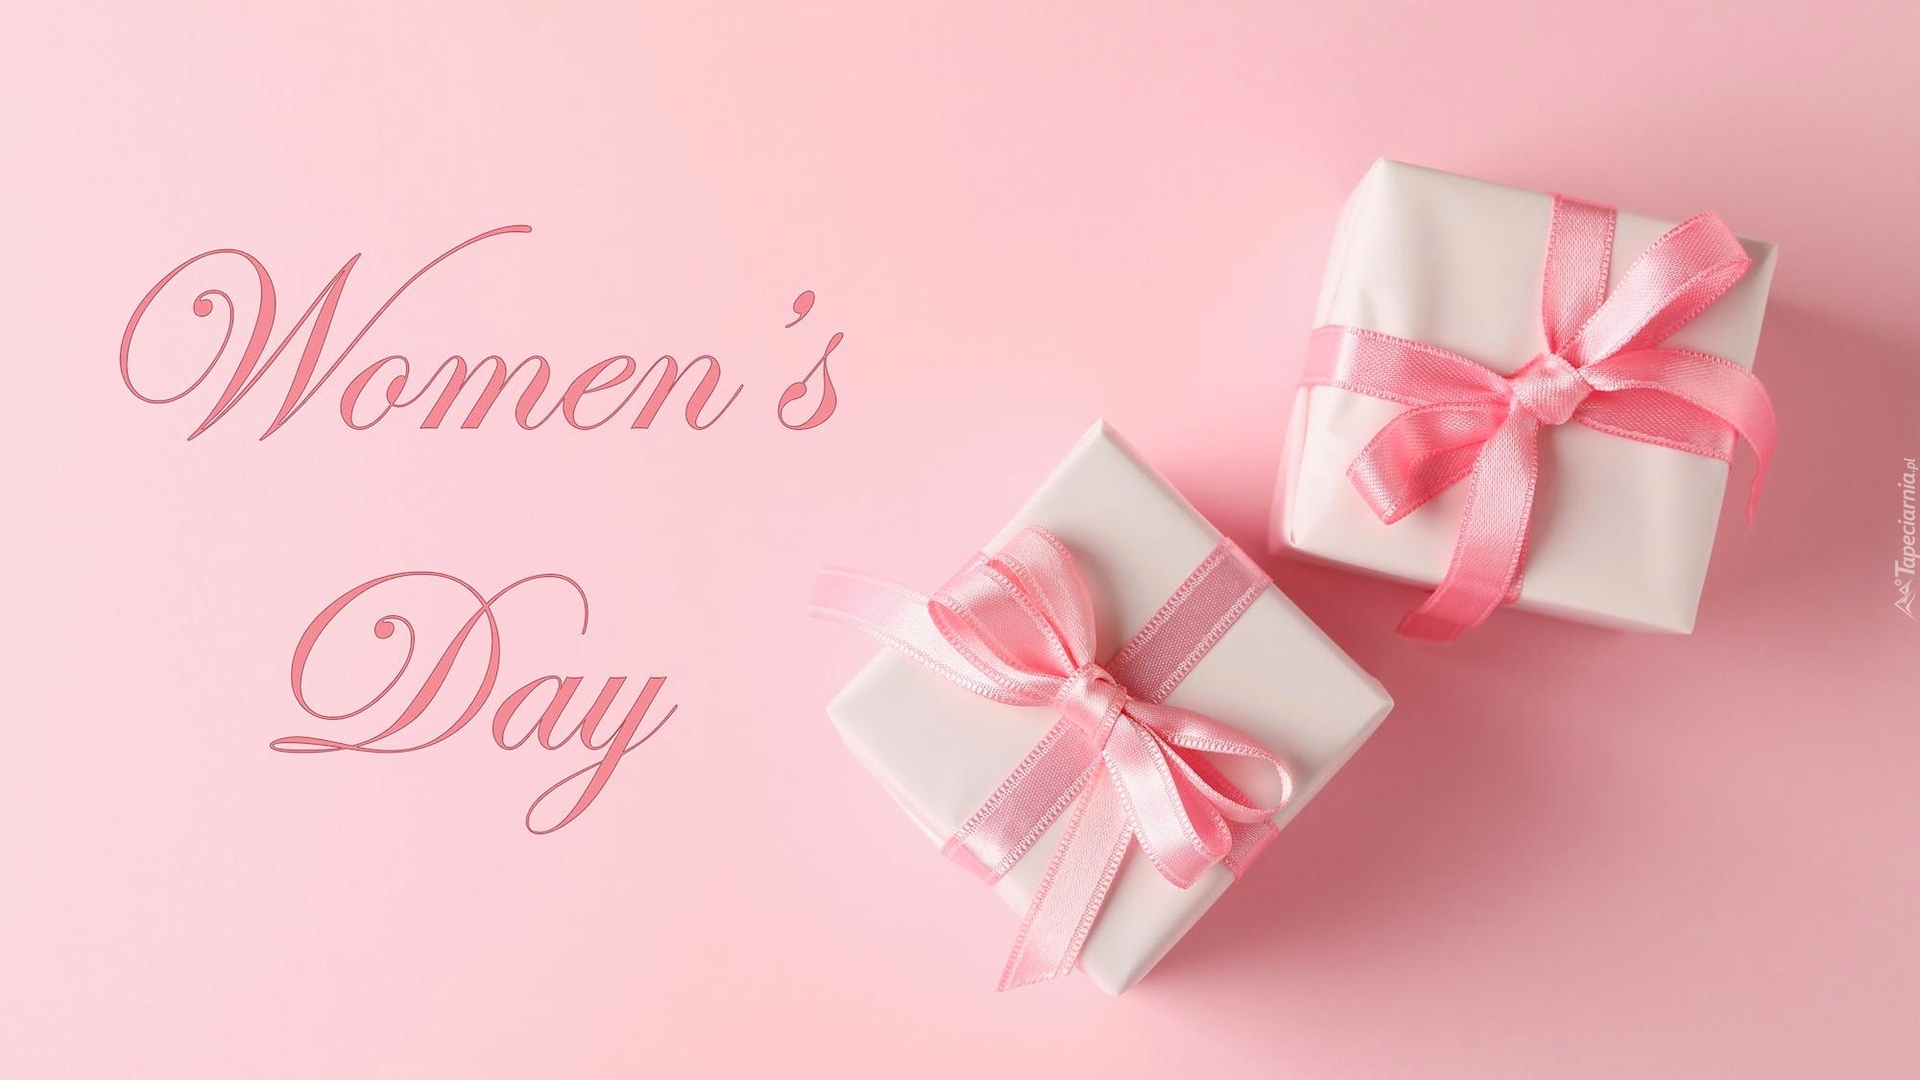 Dzień Kobiet, Napis, Womens Day, Prezenty, Różowe, Tło